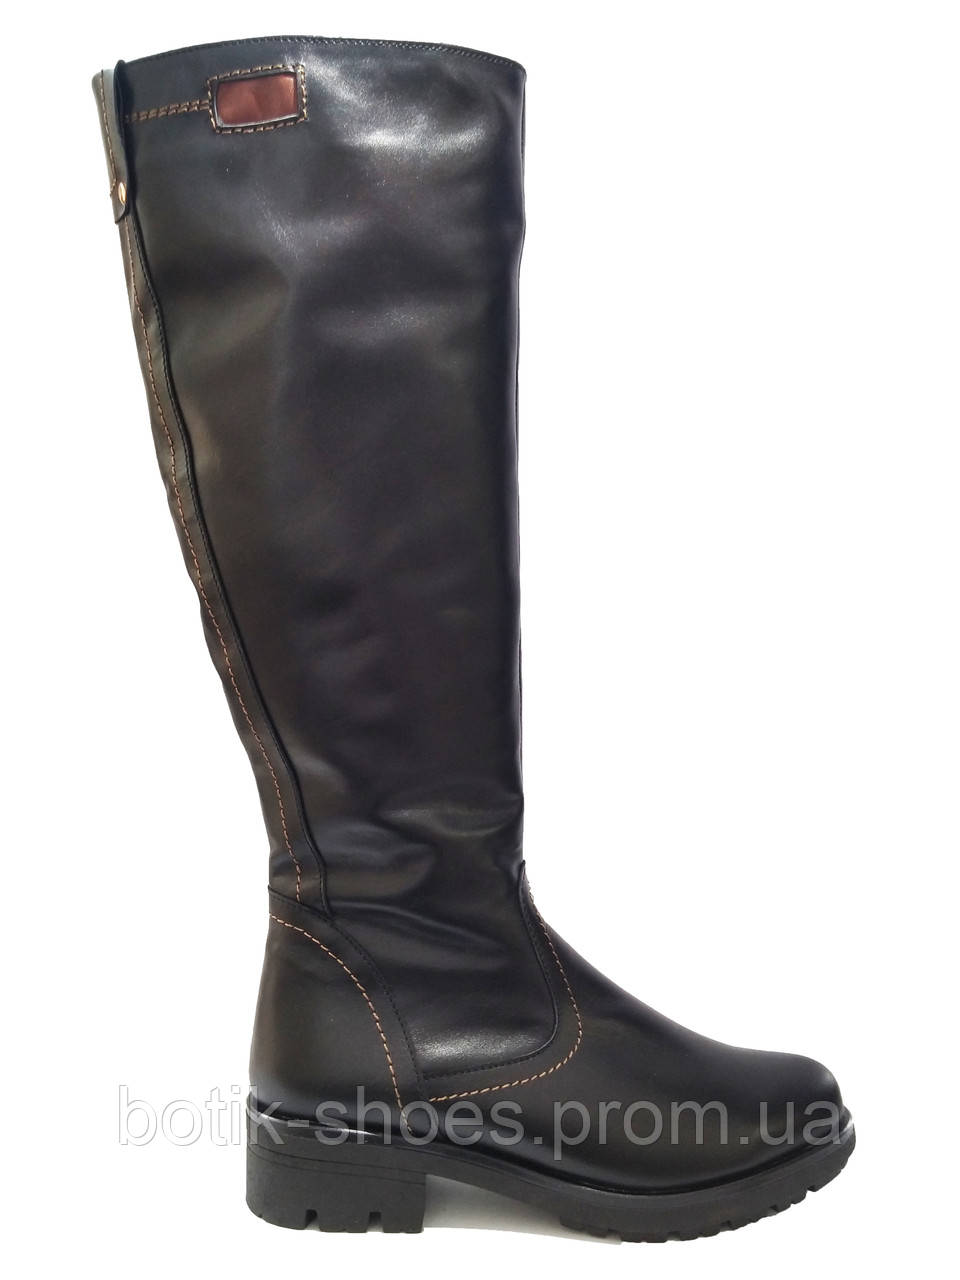 Якісні чоботи зимові жіночі шкіряні на низькому каблуці зручні повсякденні комфорт теплі високі утеплені 36 розмір Maxi 804 2023